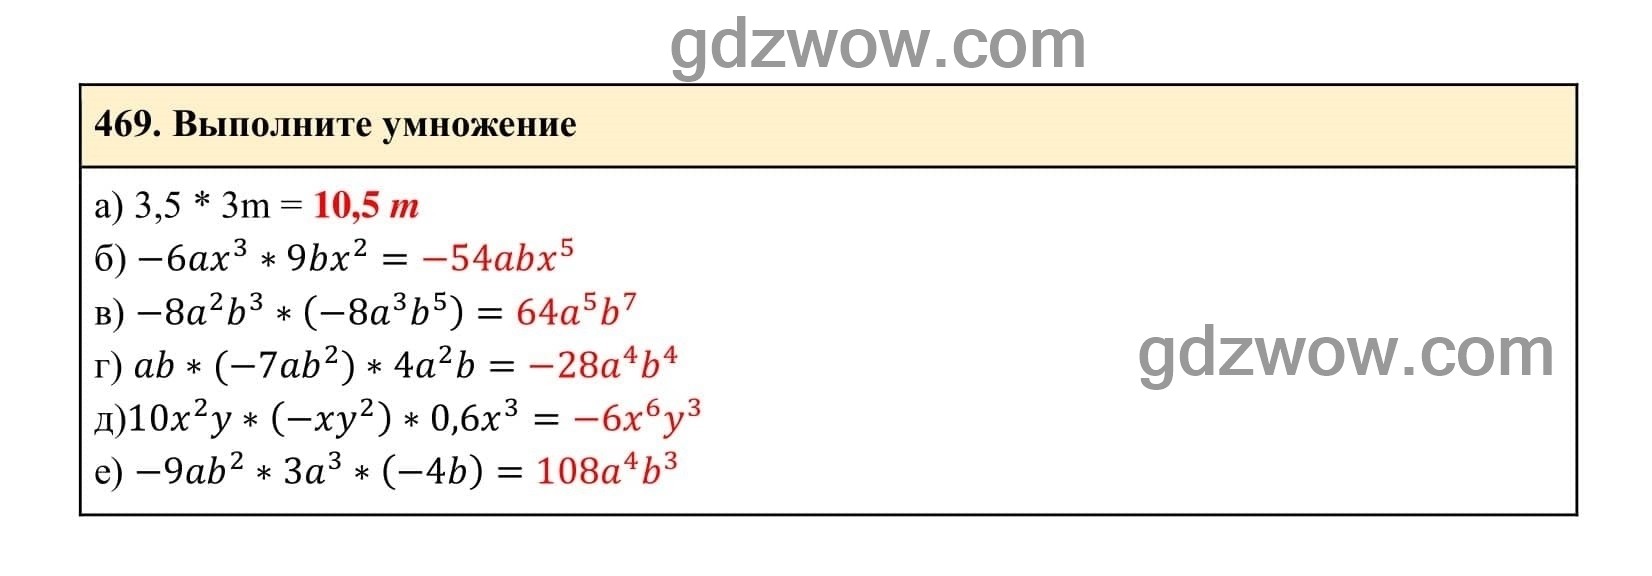 Упражнение 469 - ГДЗ по Алгебре 7 класс Учебник Макарычев (решебник) - GDZwow